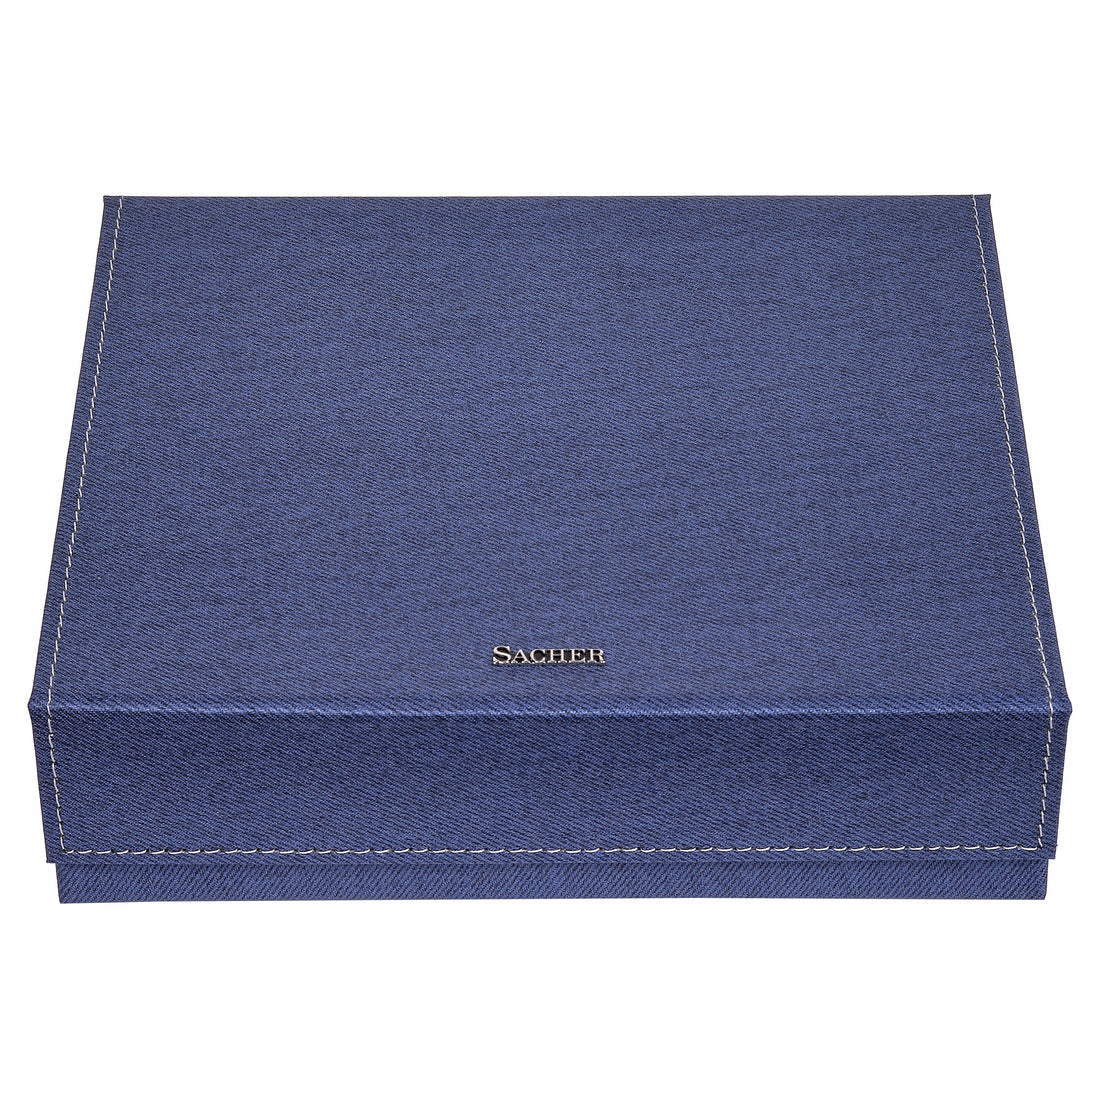 Schmuckbox Nora denim | Manufaktur – / 1846 Offizieller Store blau SACHER